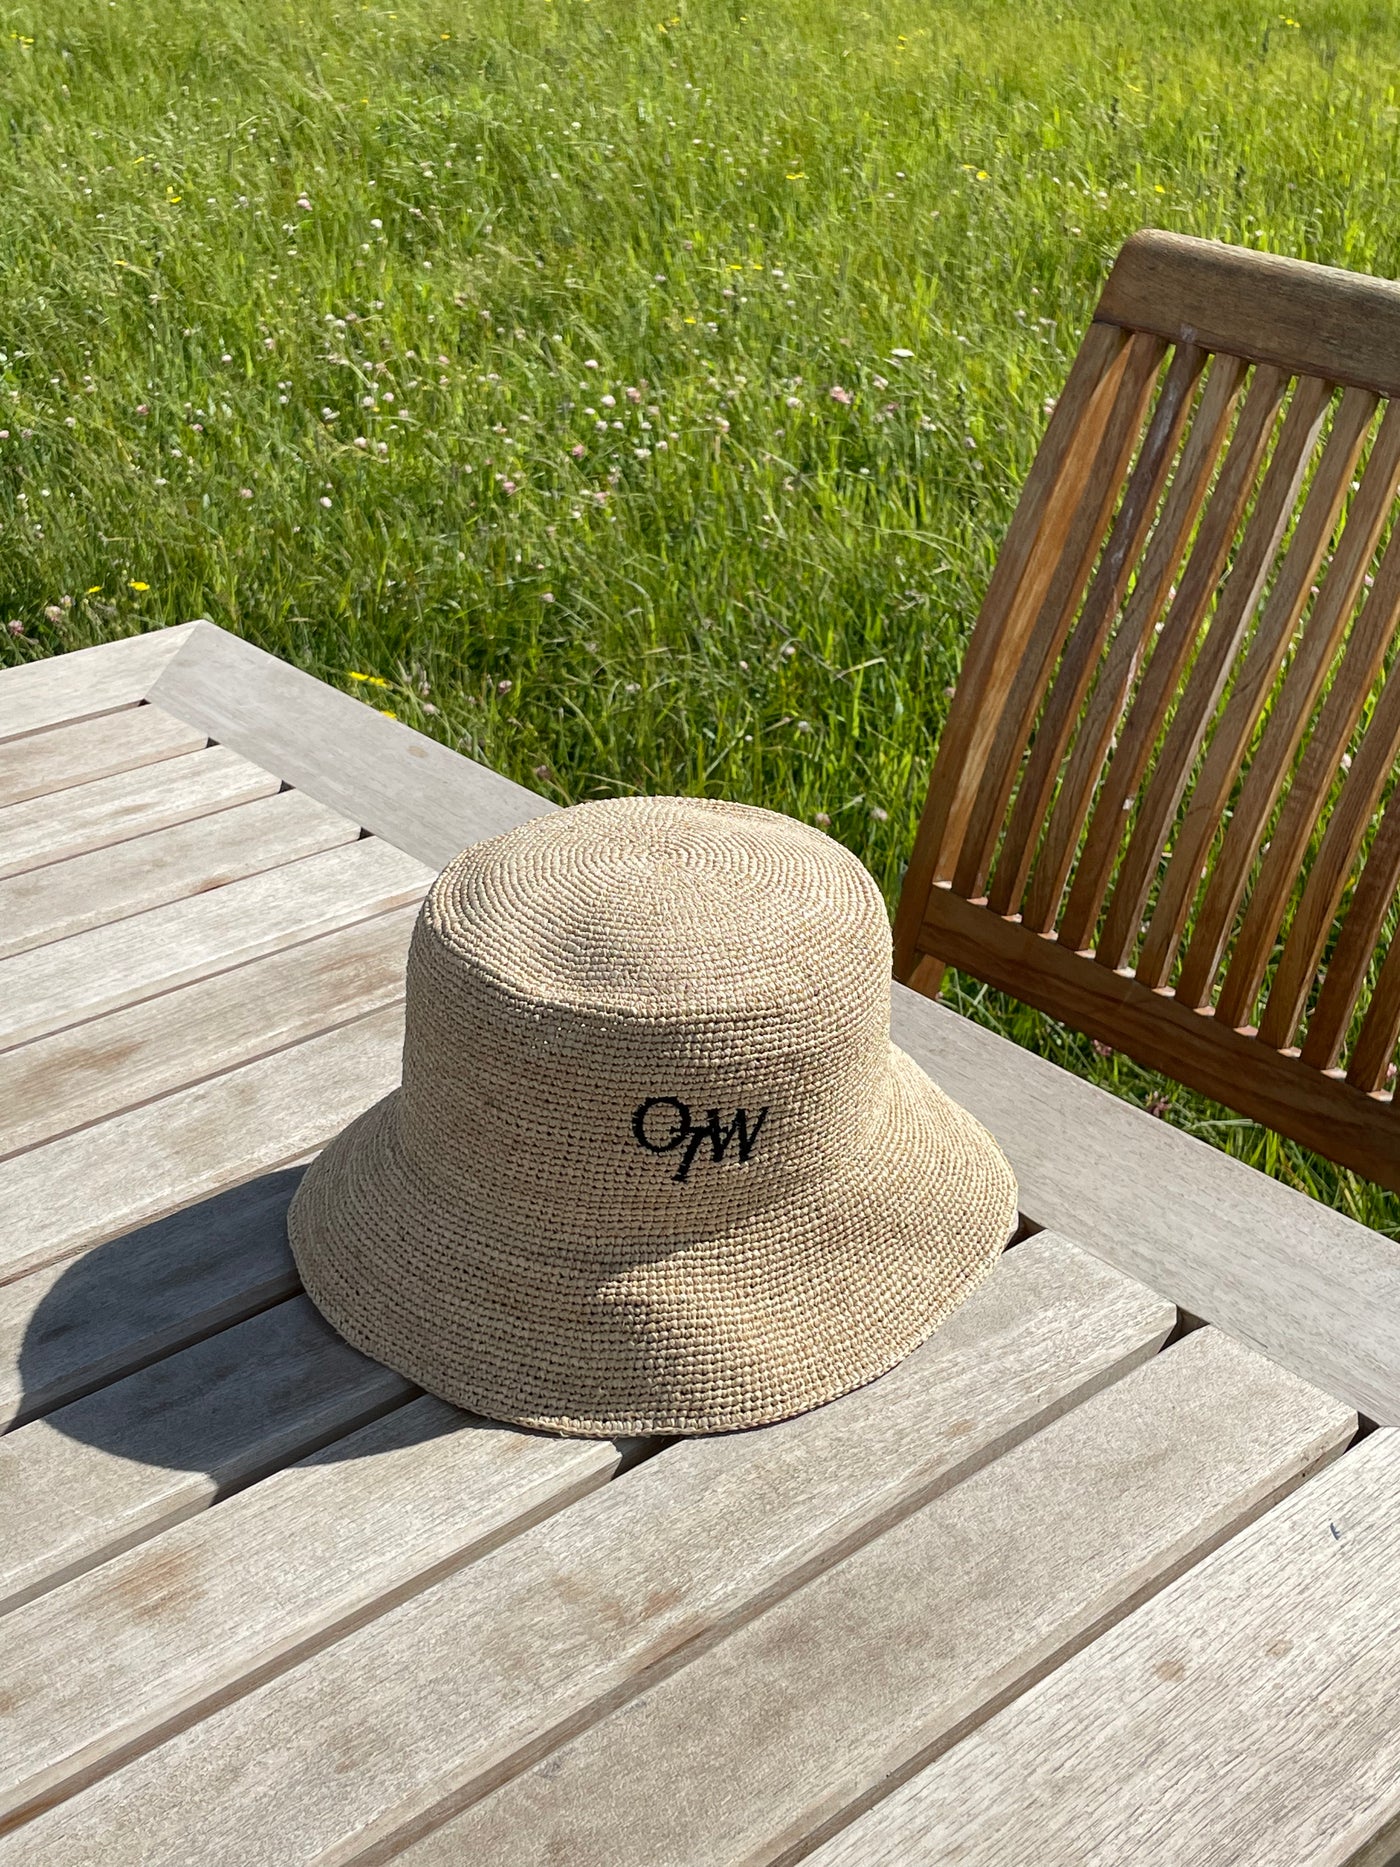 OTW Woven Sun Hat